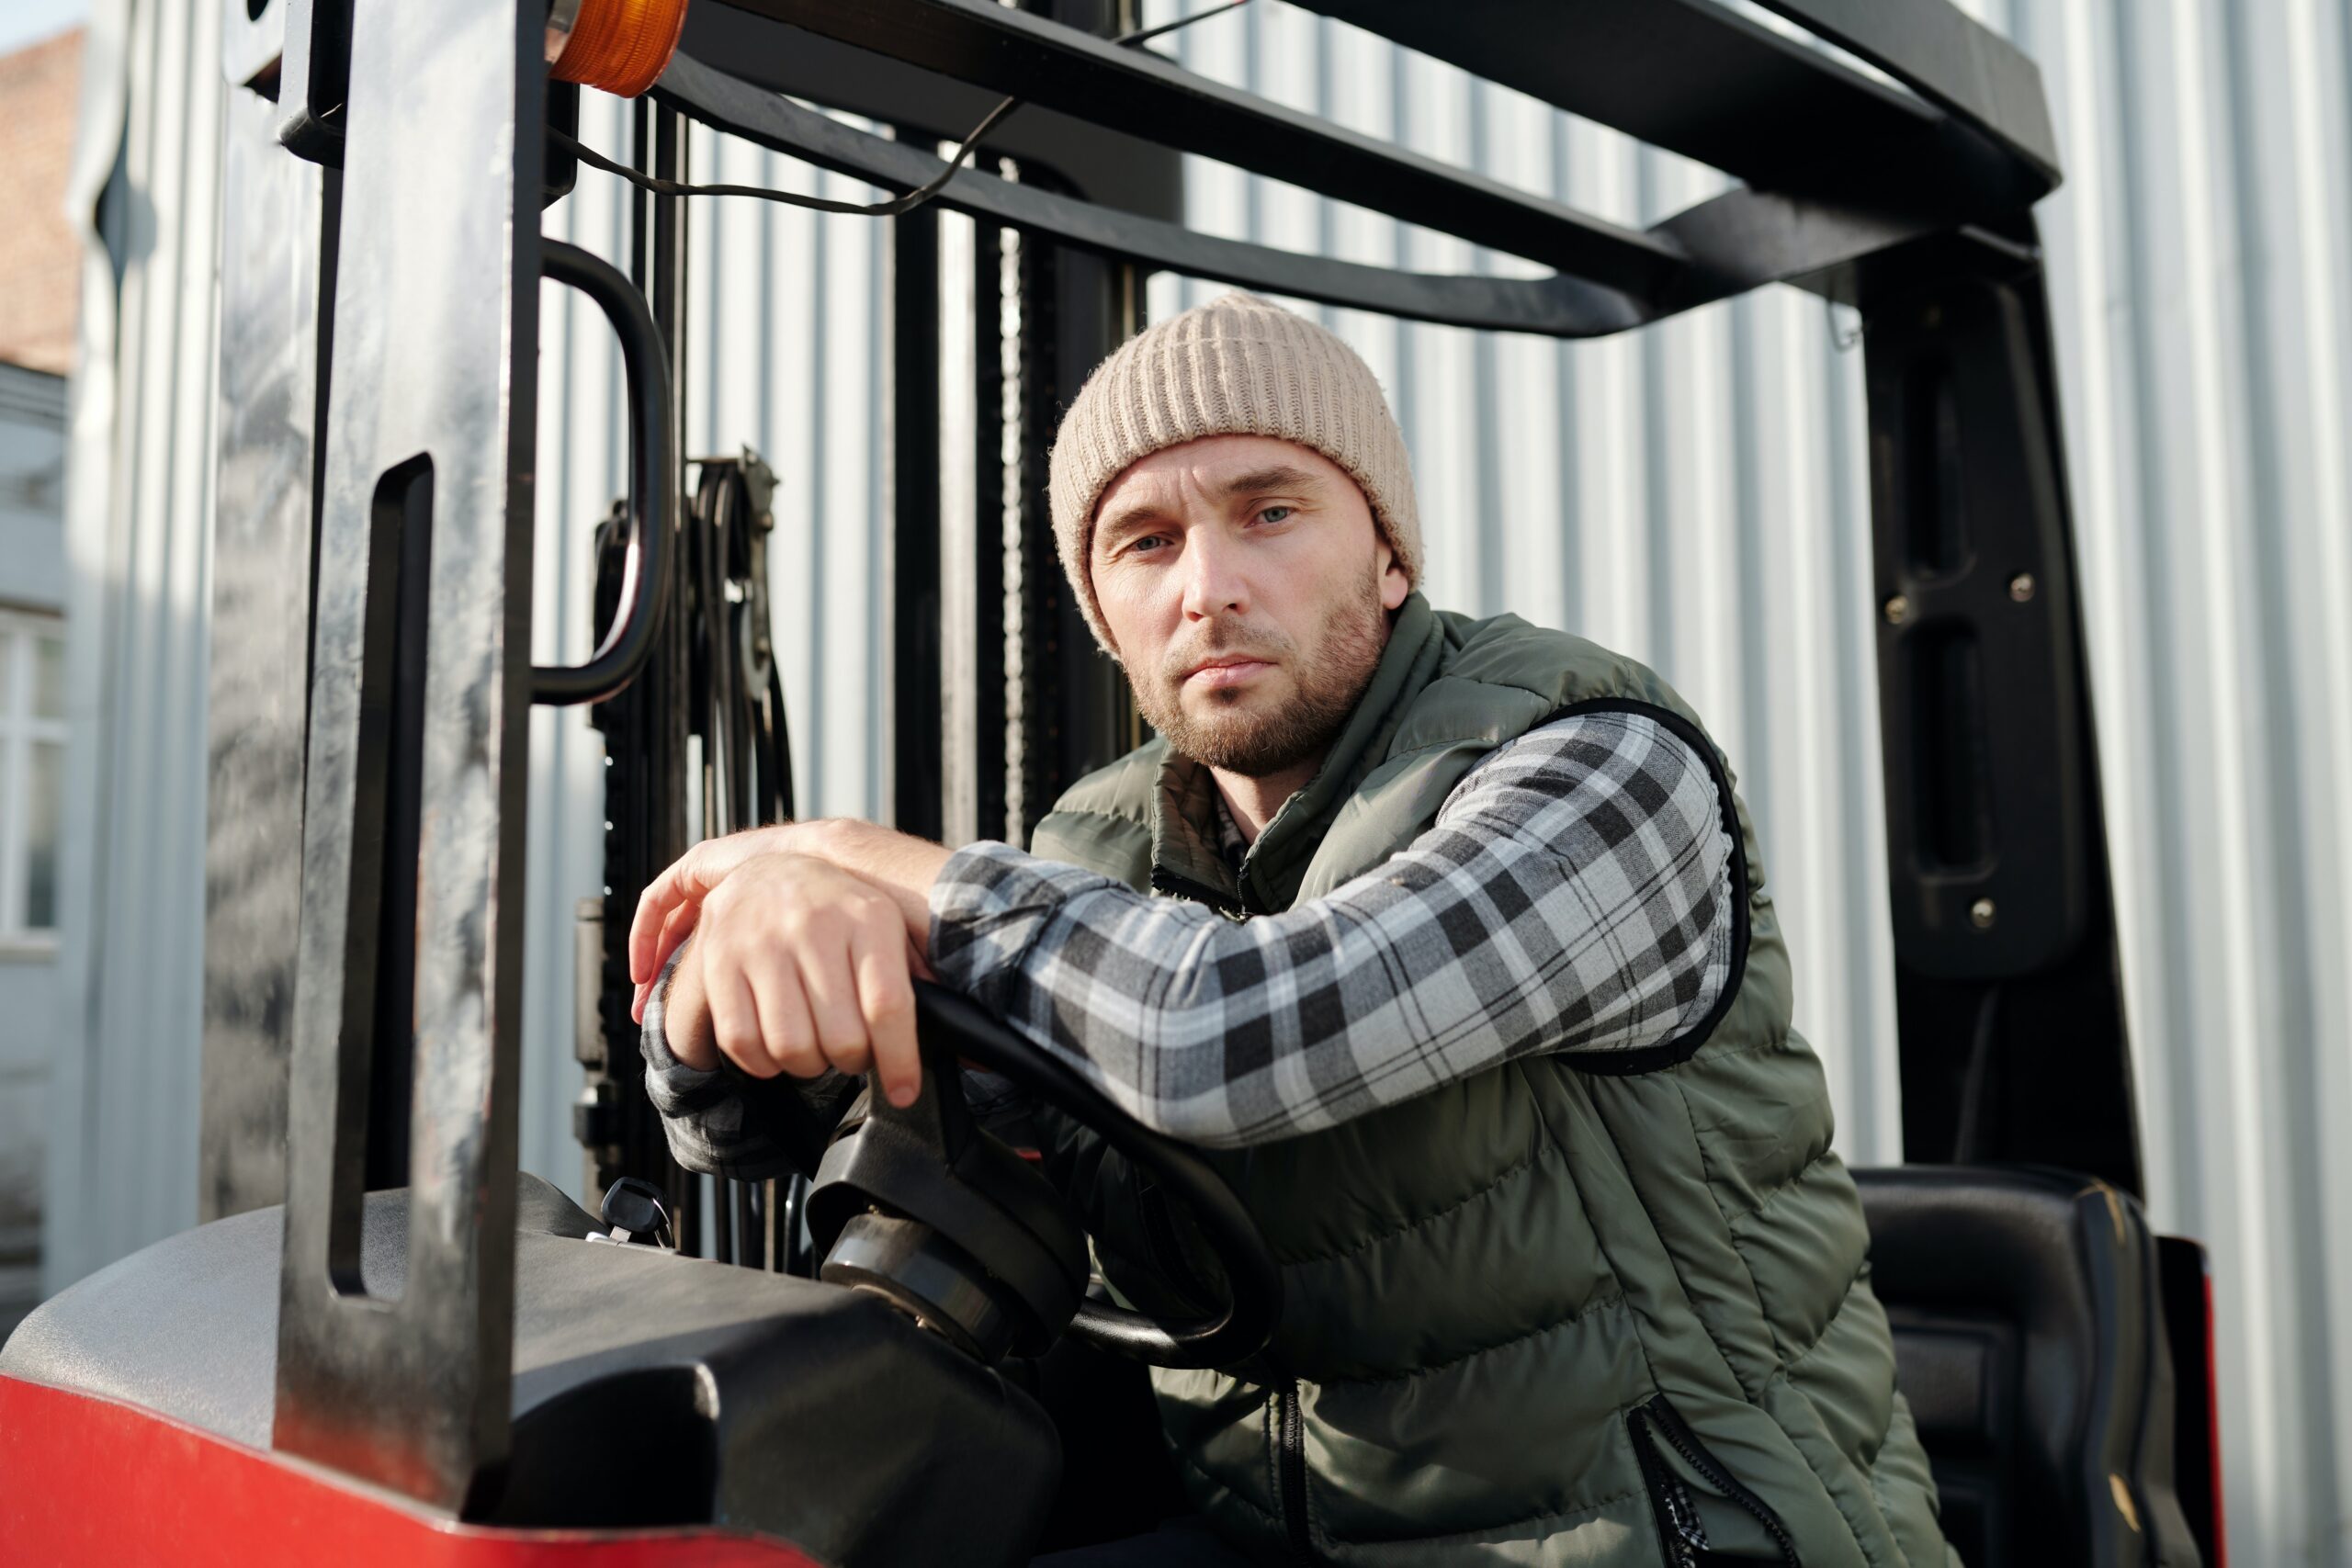 Bilden visar en person som sitter i en ledstaplare som är en typ av truck eller gaffeltruck.